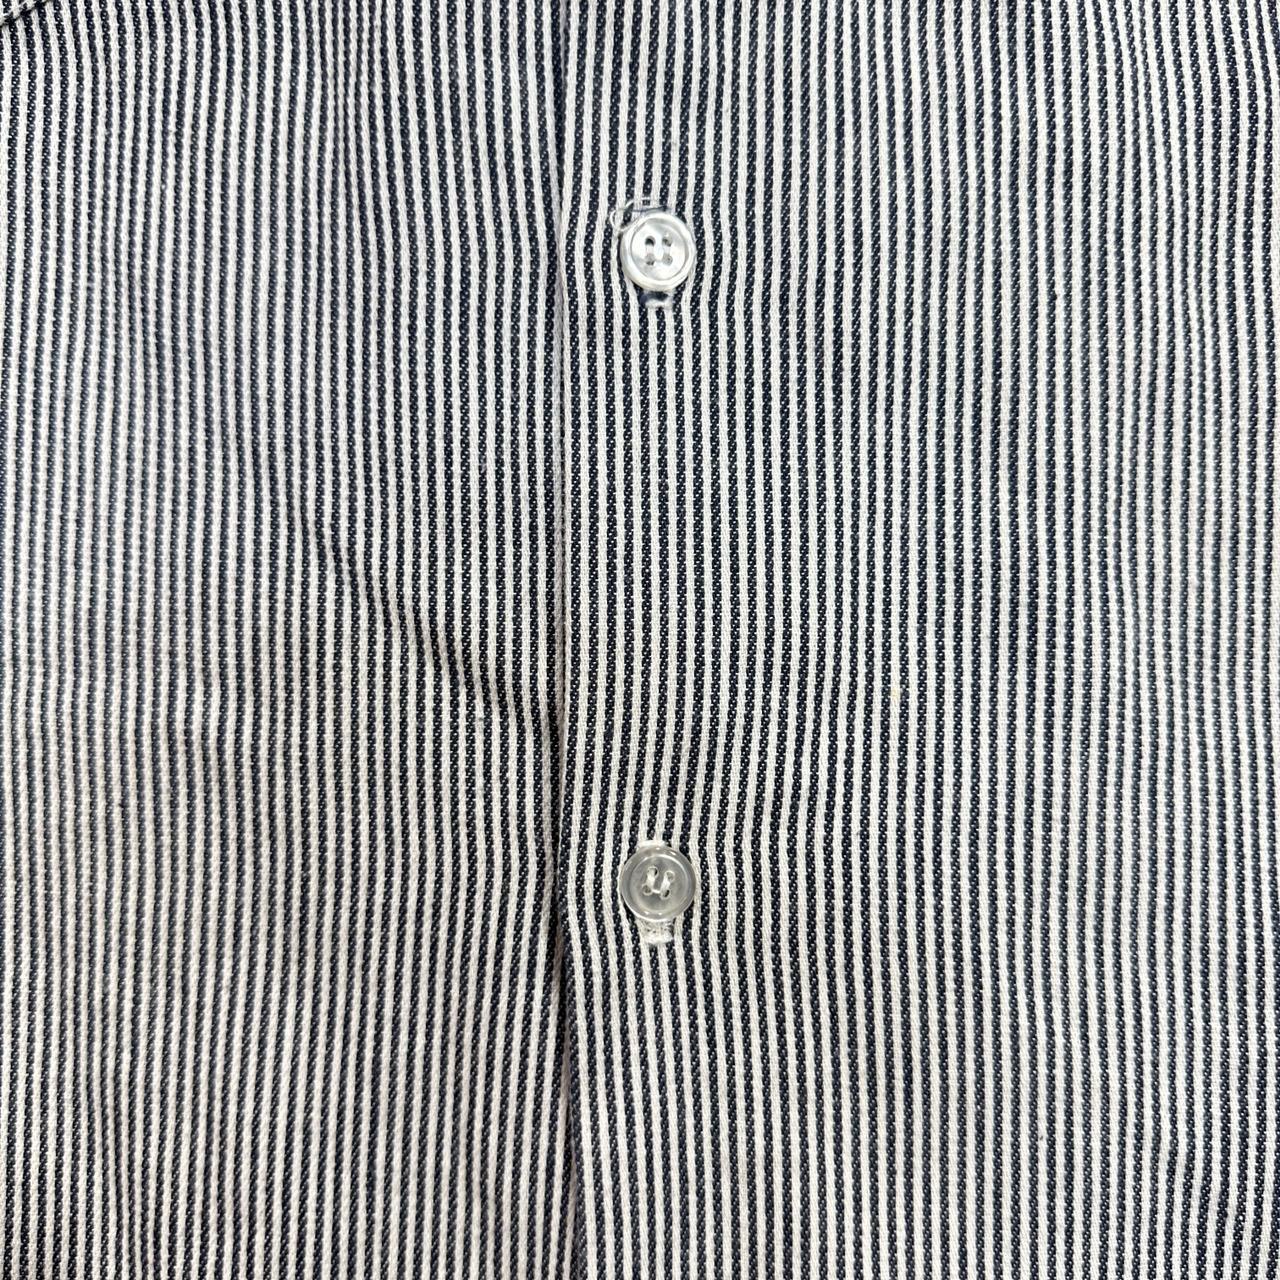 VTG Ben Davis Button Up Shirt Men's L Long Sleeve... - Depop